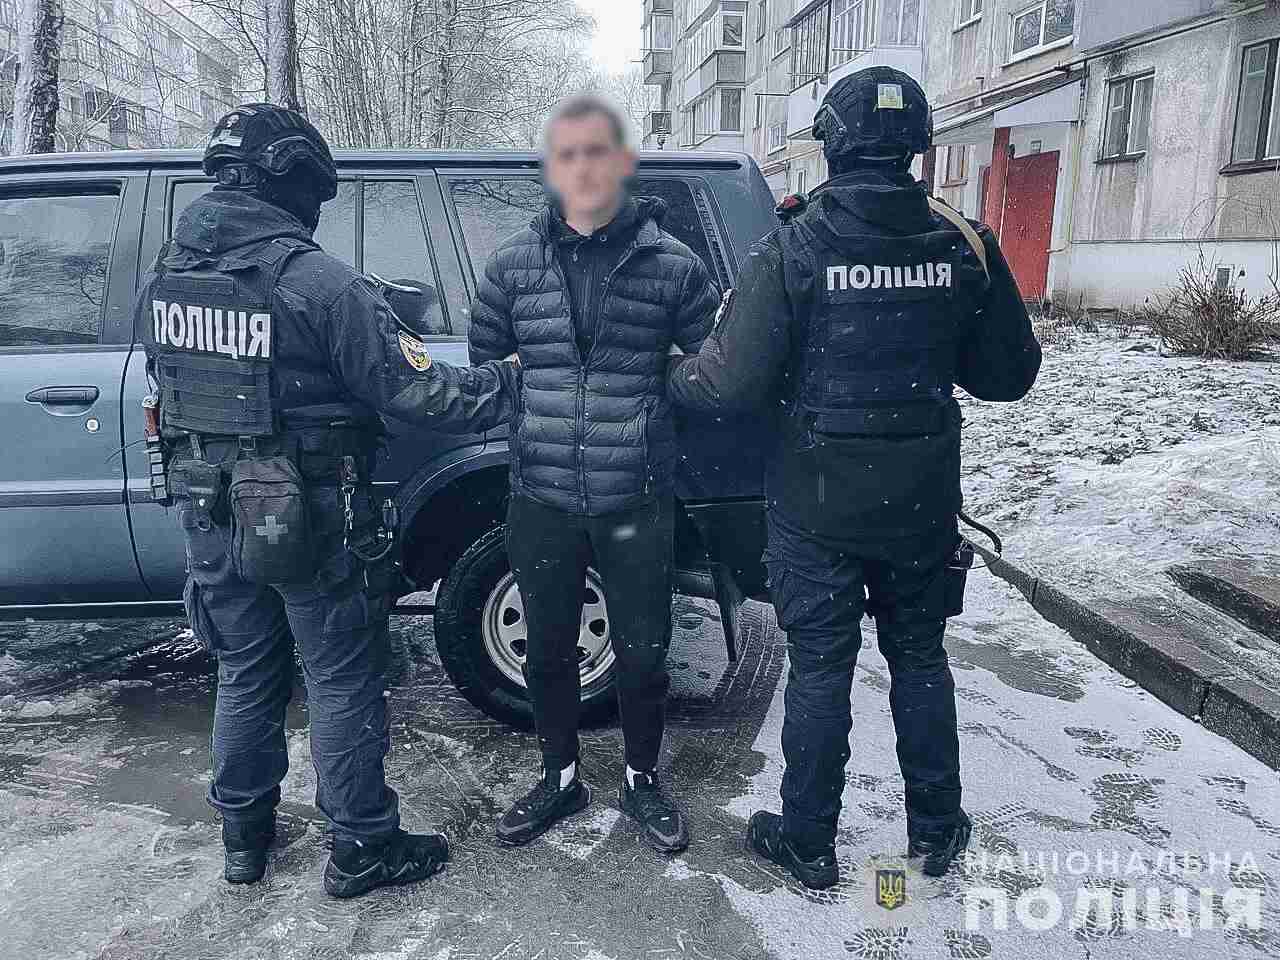 Поліція затримала чоловіків, які на замовлення підпалювали квартири і будинки «коктейлями Молотова» на Львівщині та в інших областях (ВІДЕО)